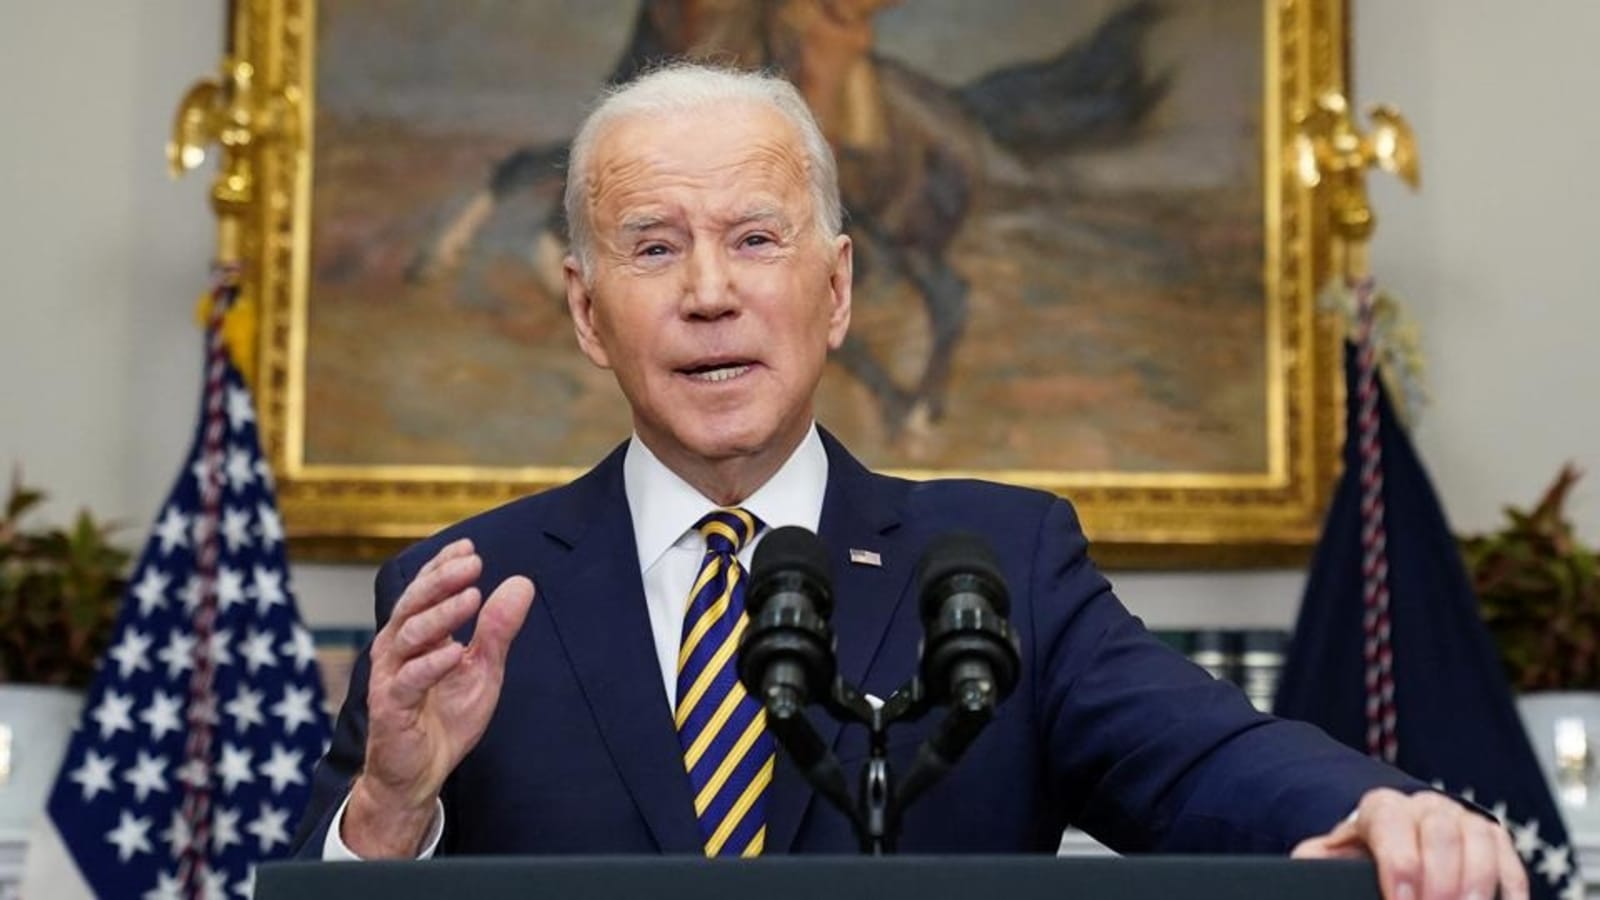 Biden akan menjamu para pemimpin negara-negara ASEAN di Washington pada 12-13 Mei: Gedung Putih |  Berita Dunia